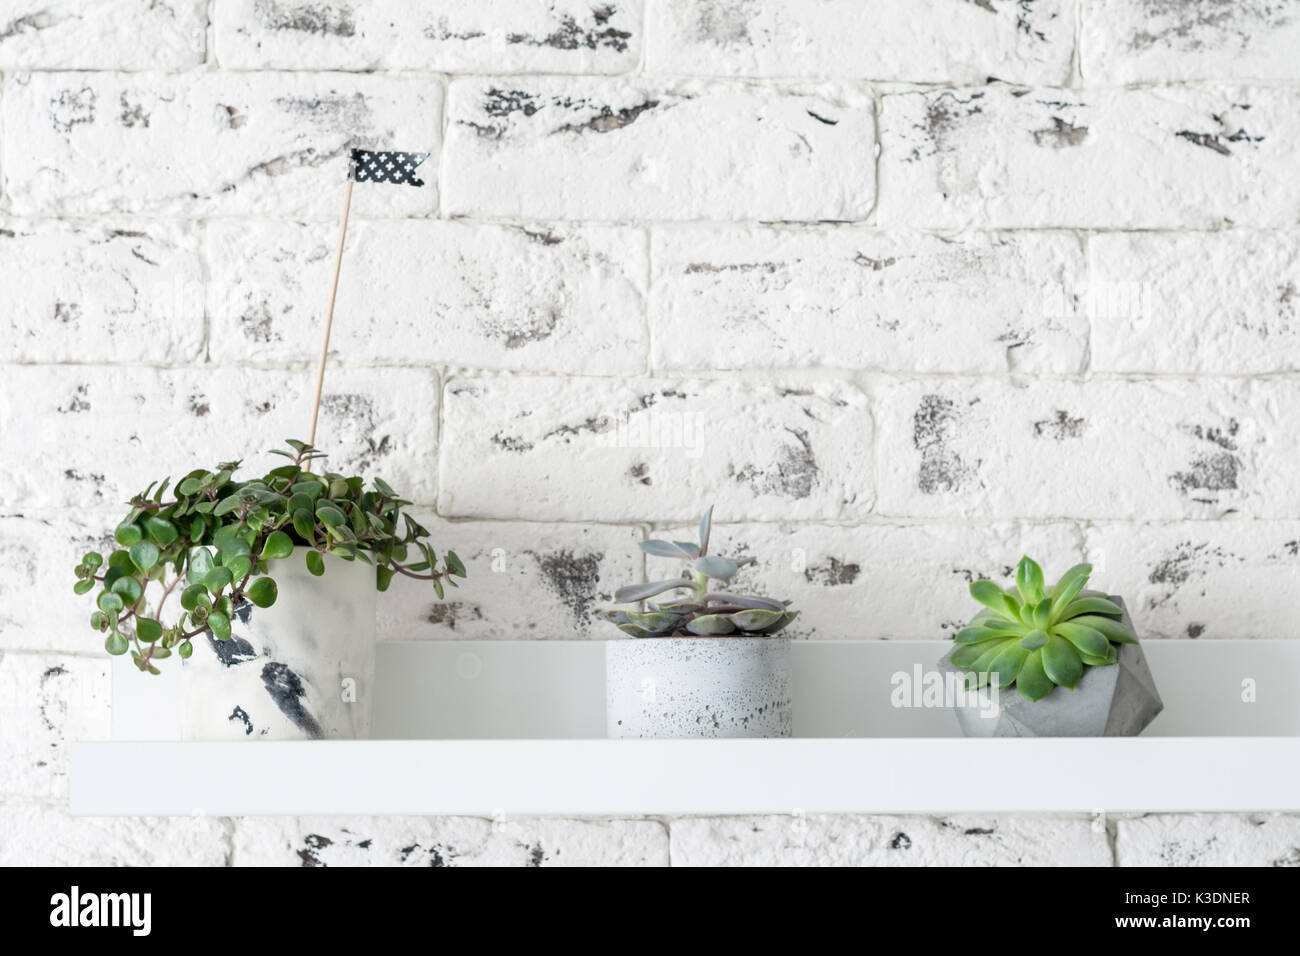 Intérieur scandinave loft moderne. Les plantes succulentes sur over white brick wall background. horizontale avec copie espace pour le texte Banque D'Images